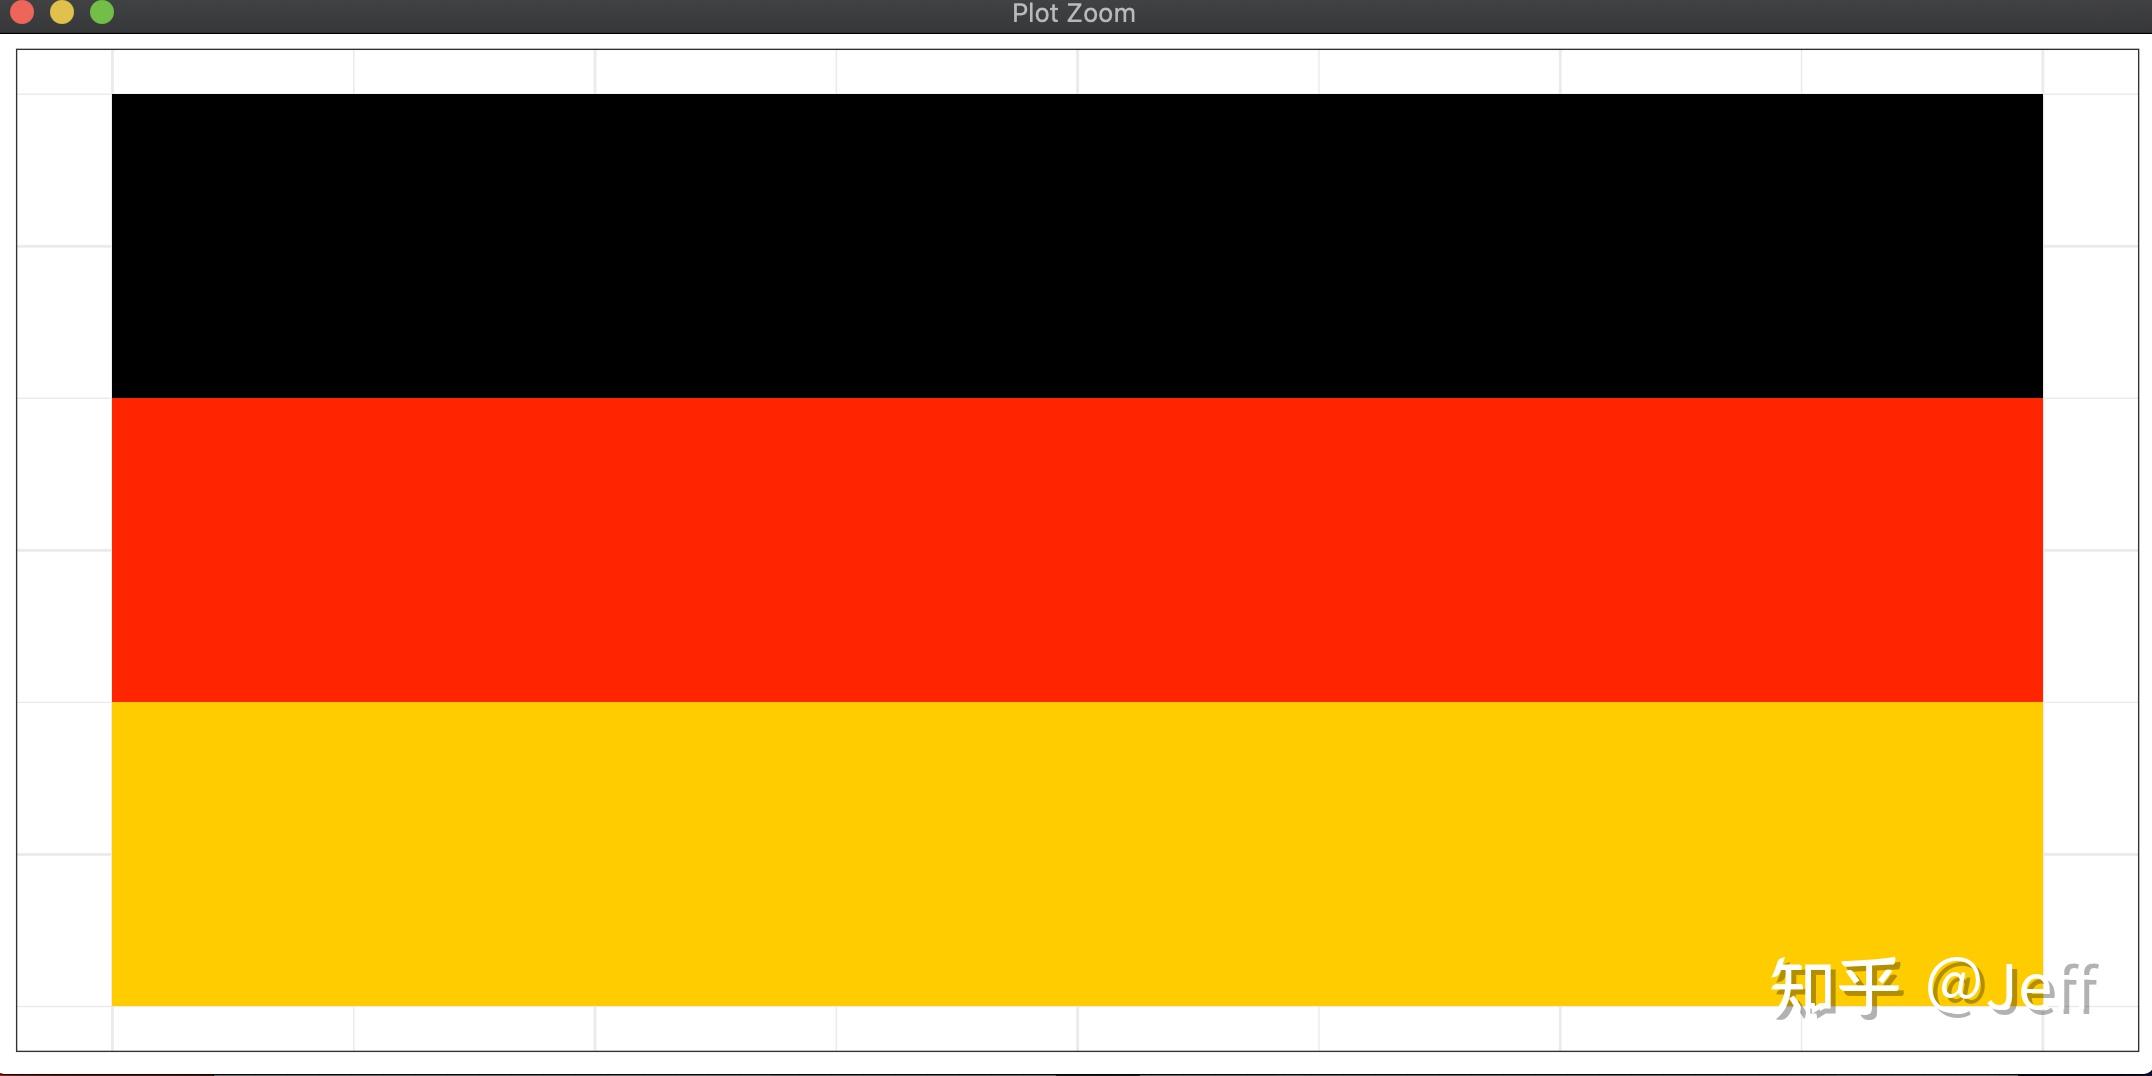 请问如何用ggplot2来画出德国国旗